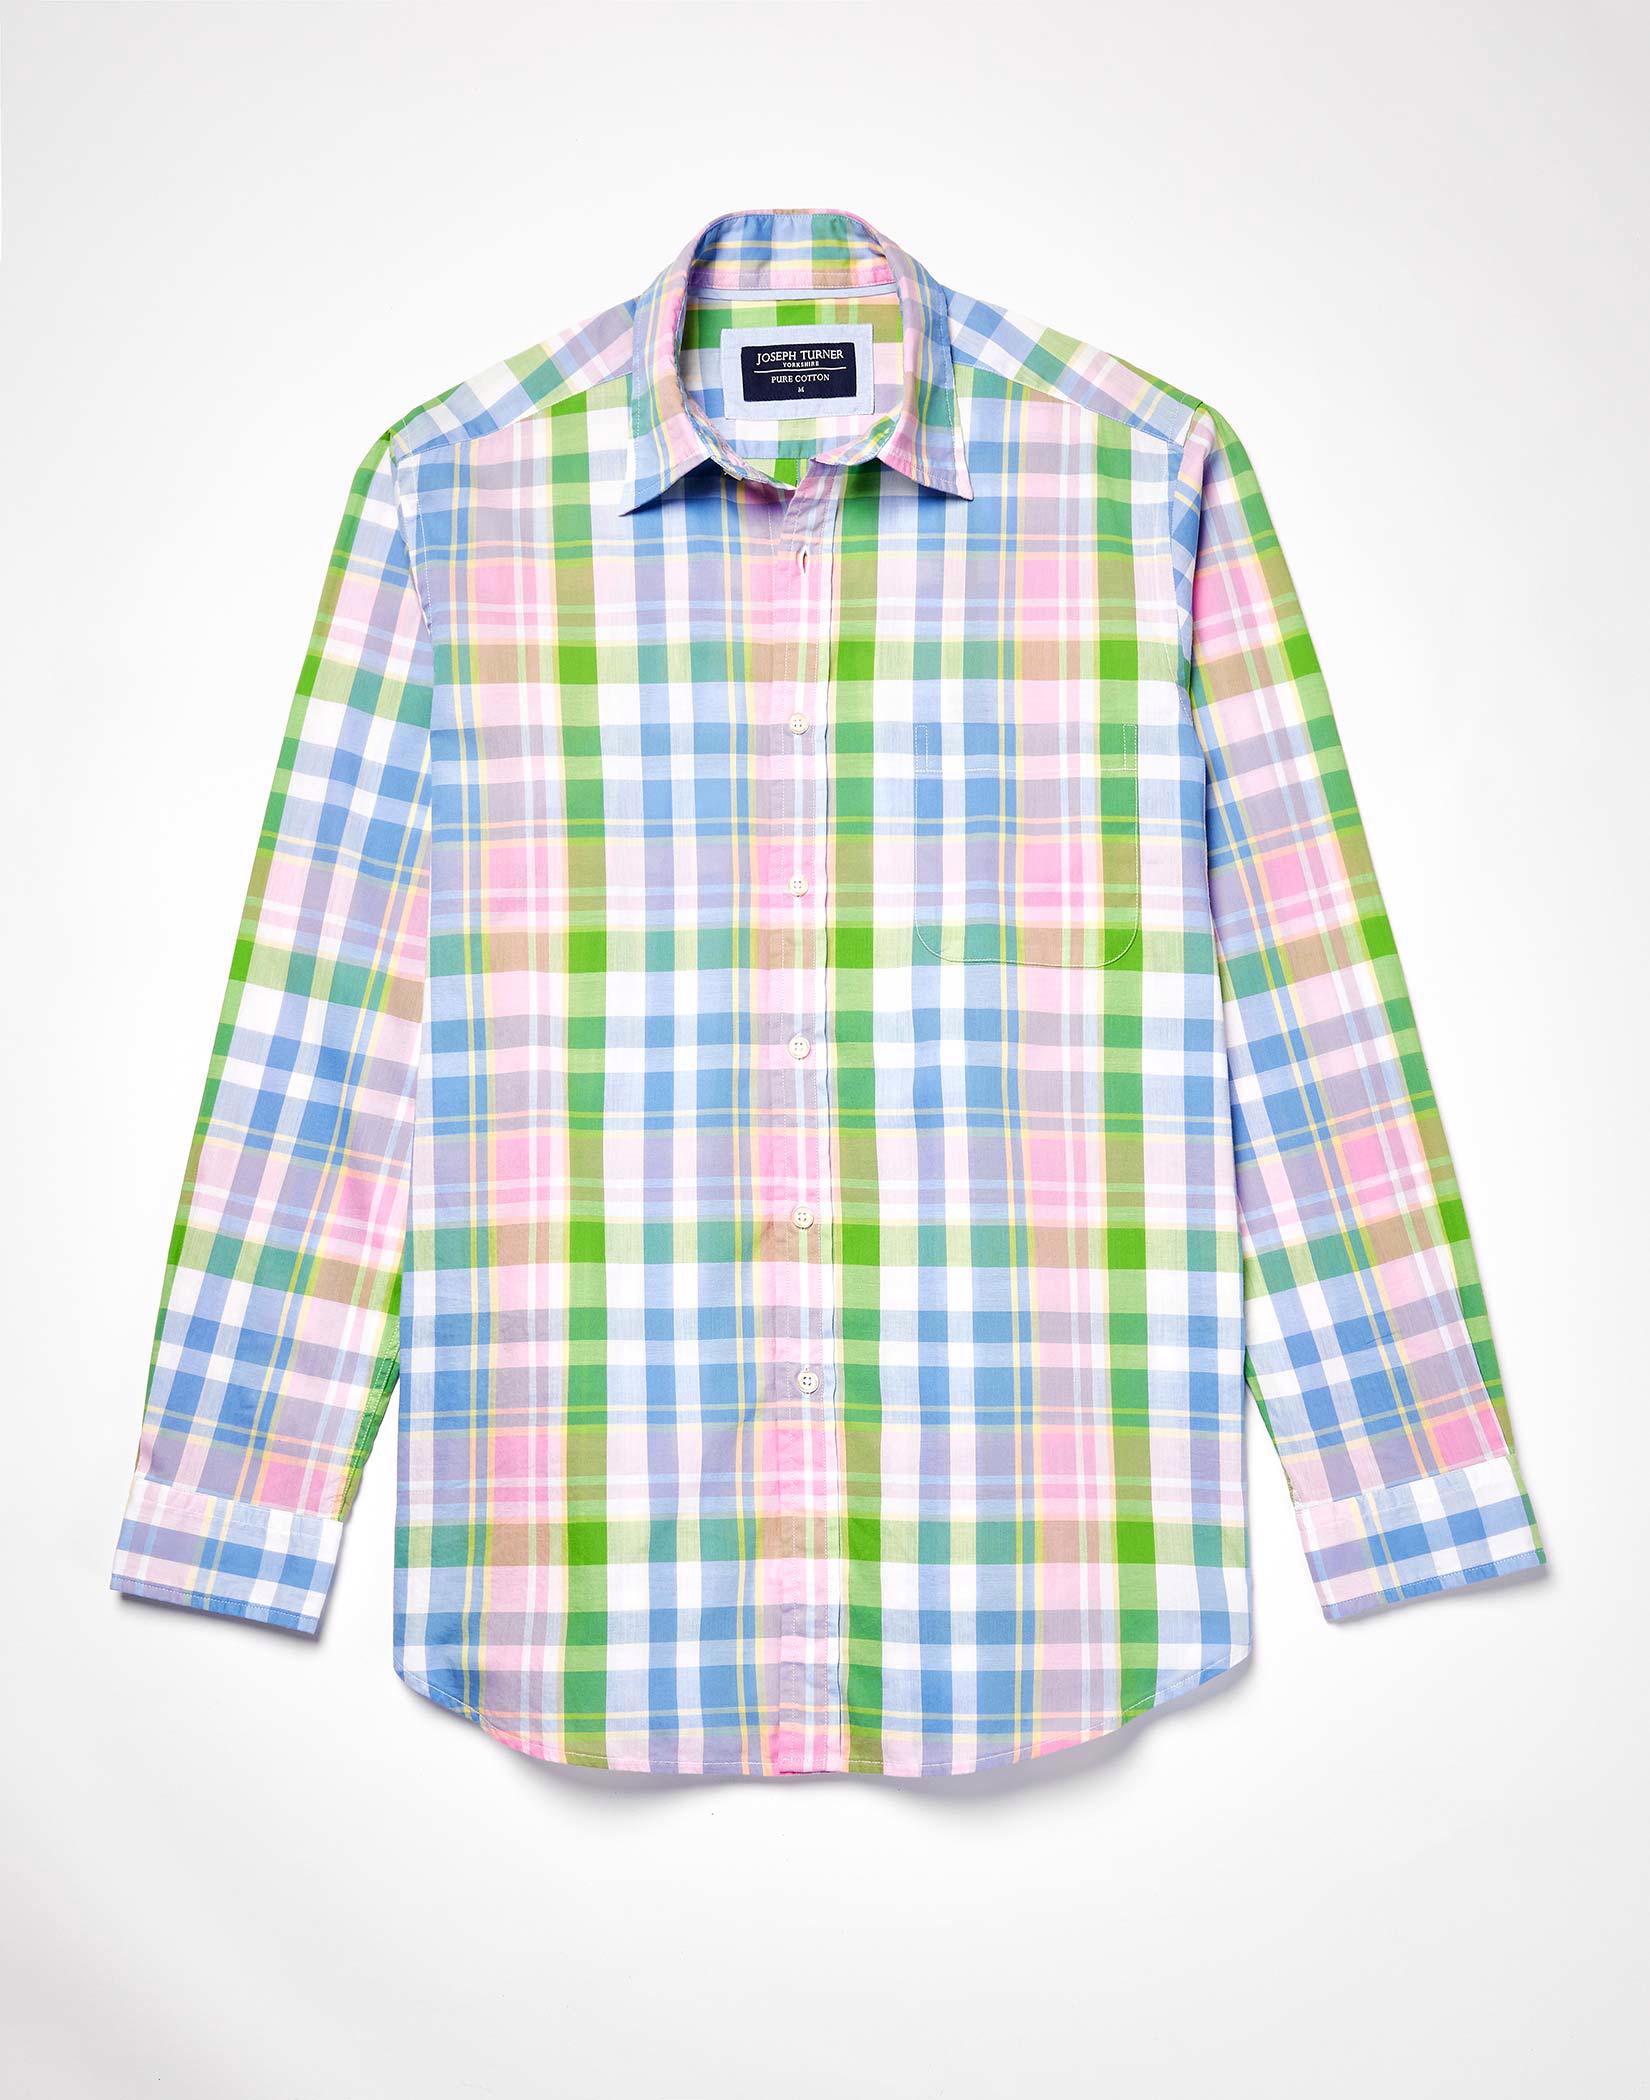 Weekend Shirt Long Sleeve - Blue/Green/Pink